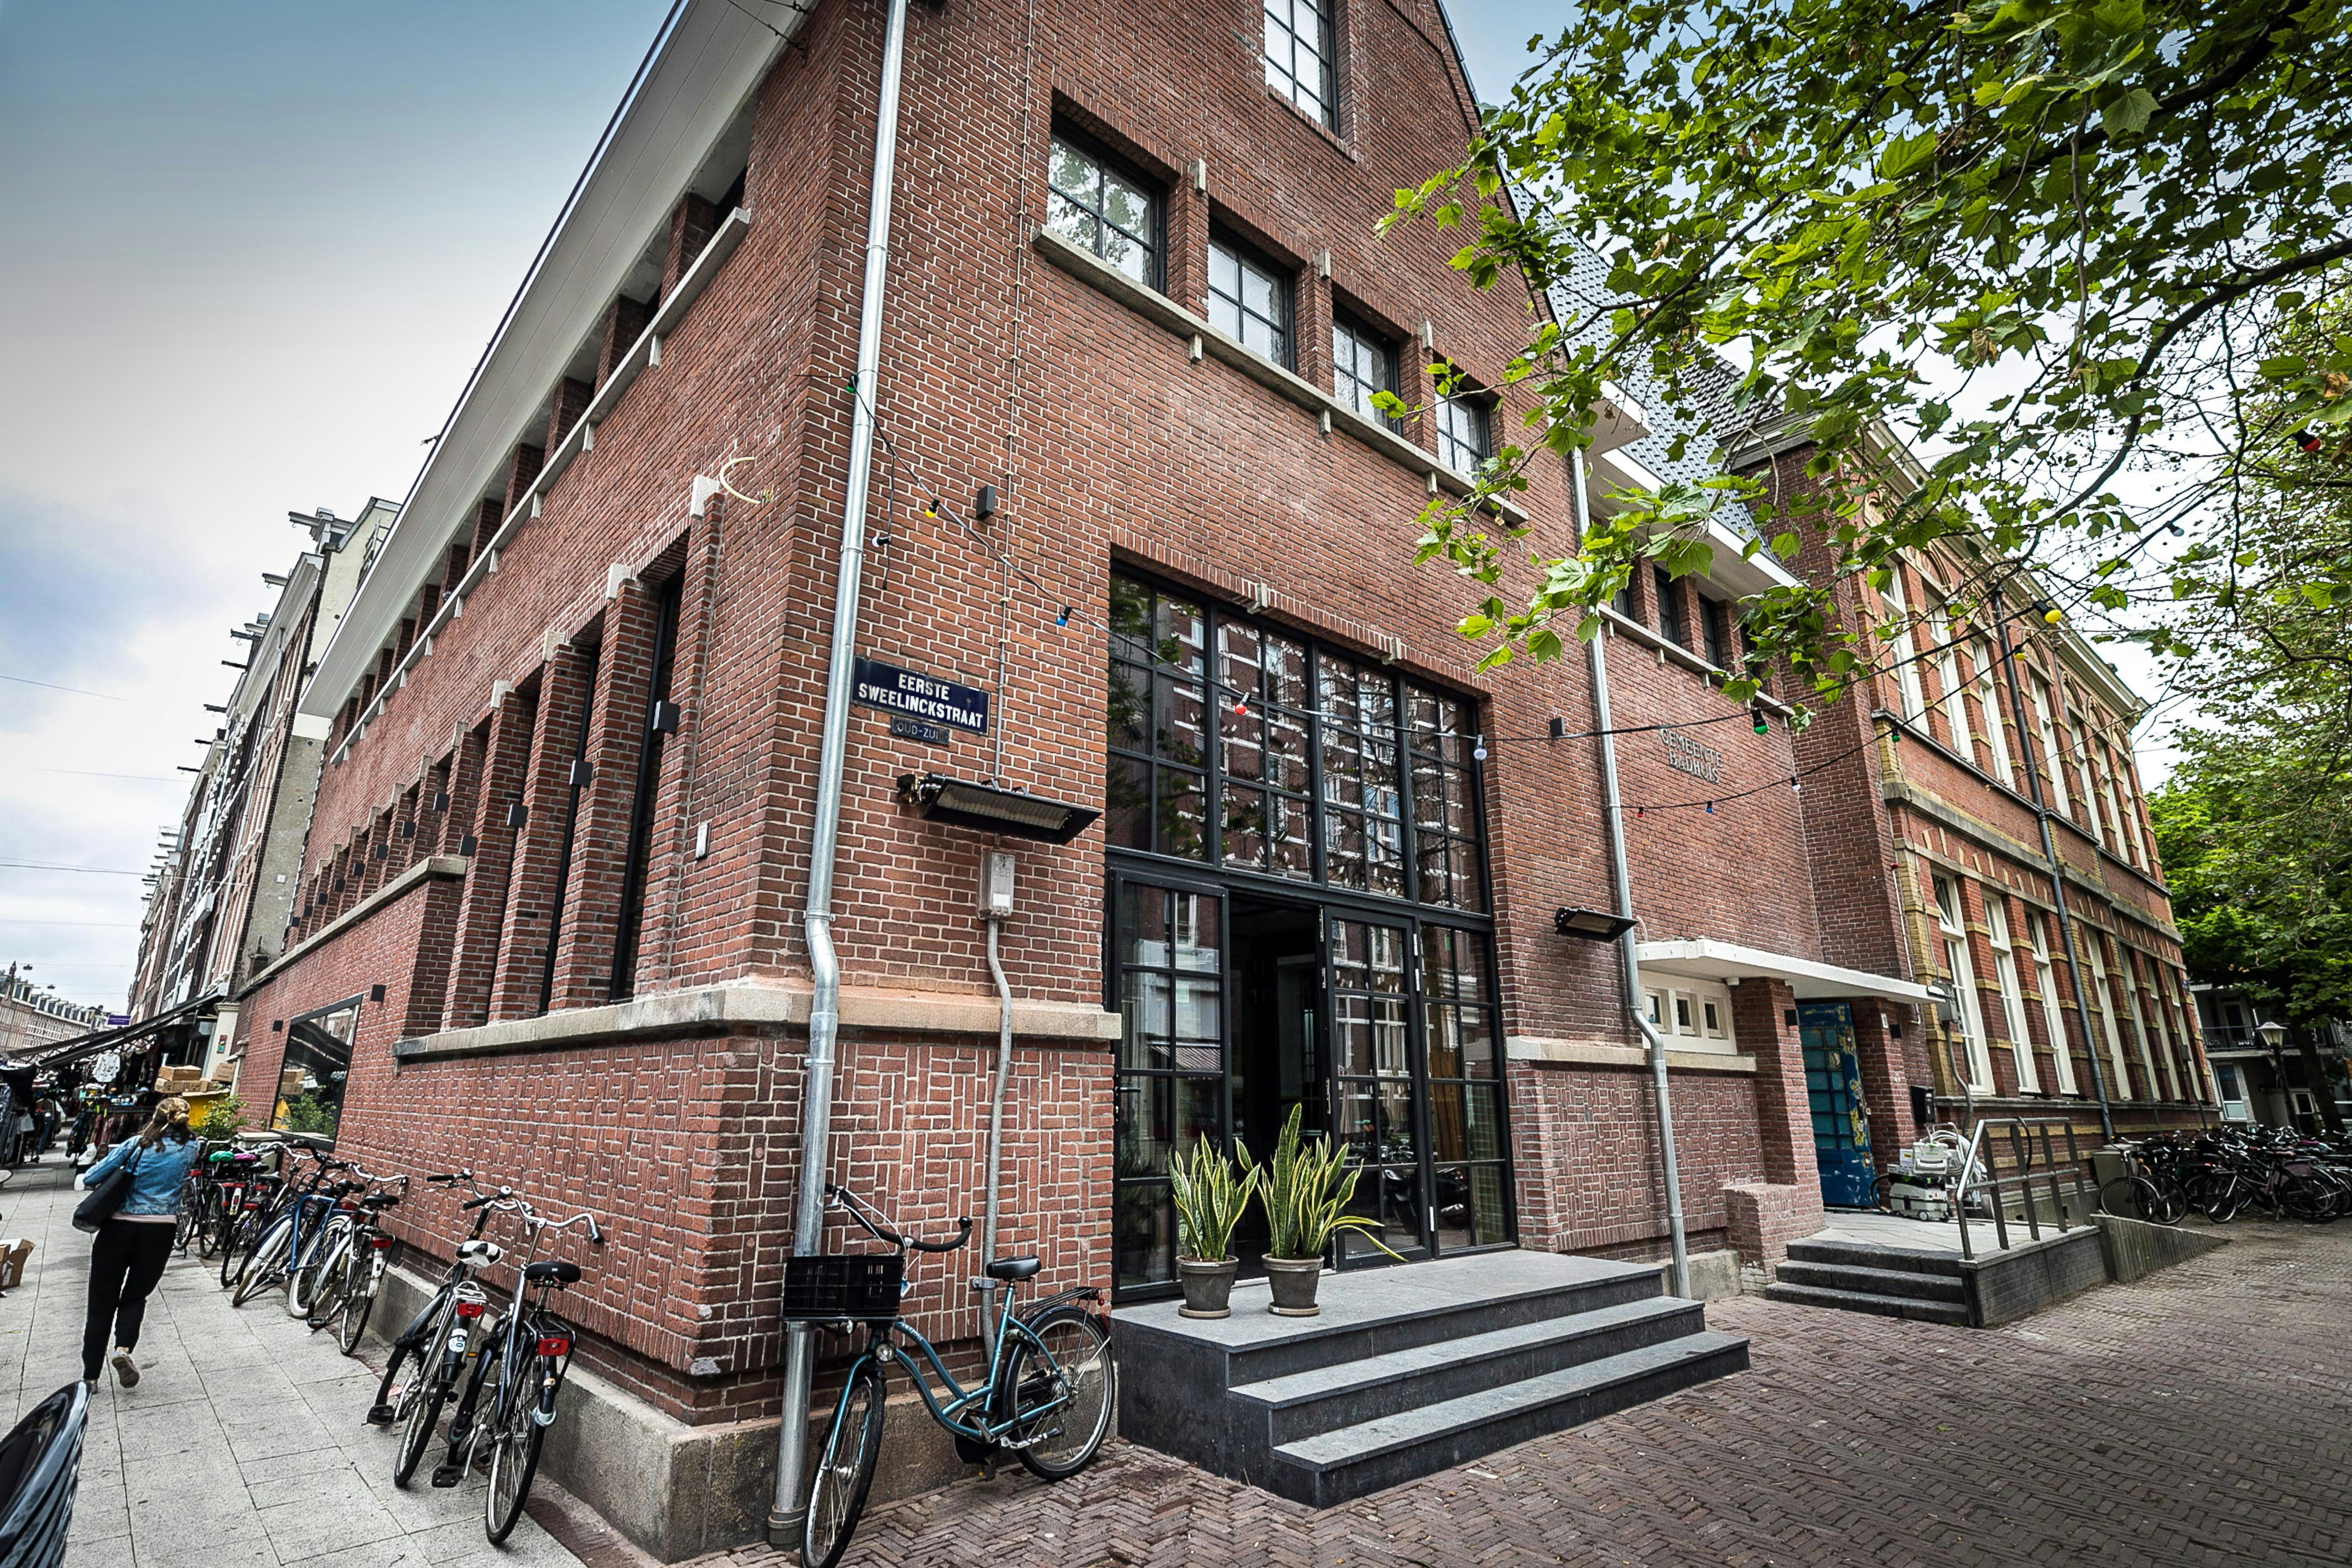 Het restaurant zit gevestigd in het voormalige muziekpodium De Badcuyp in Amsterdam. (c) Diederik van der Laan